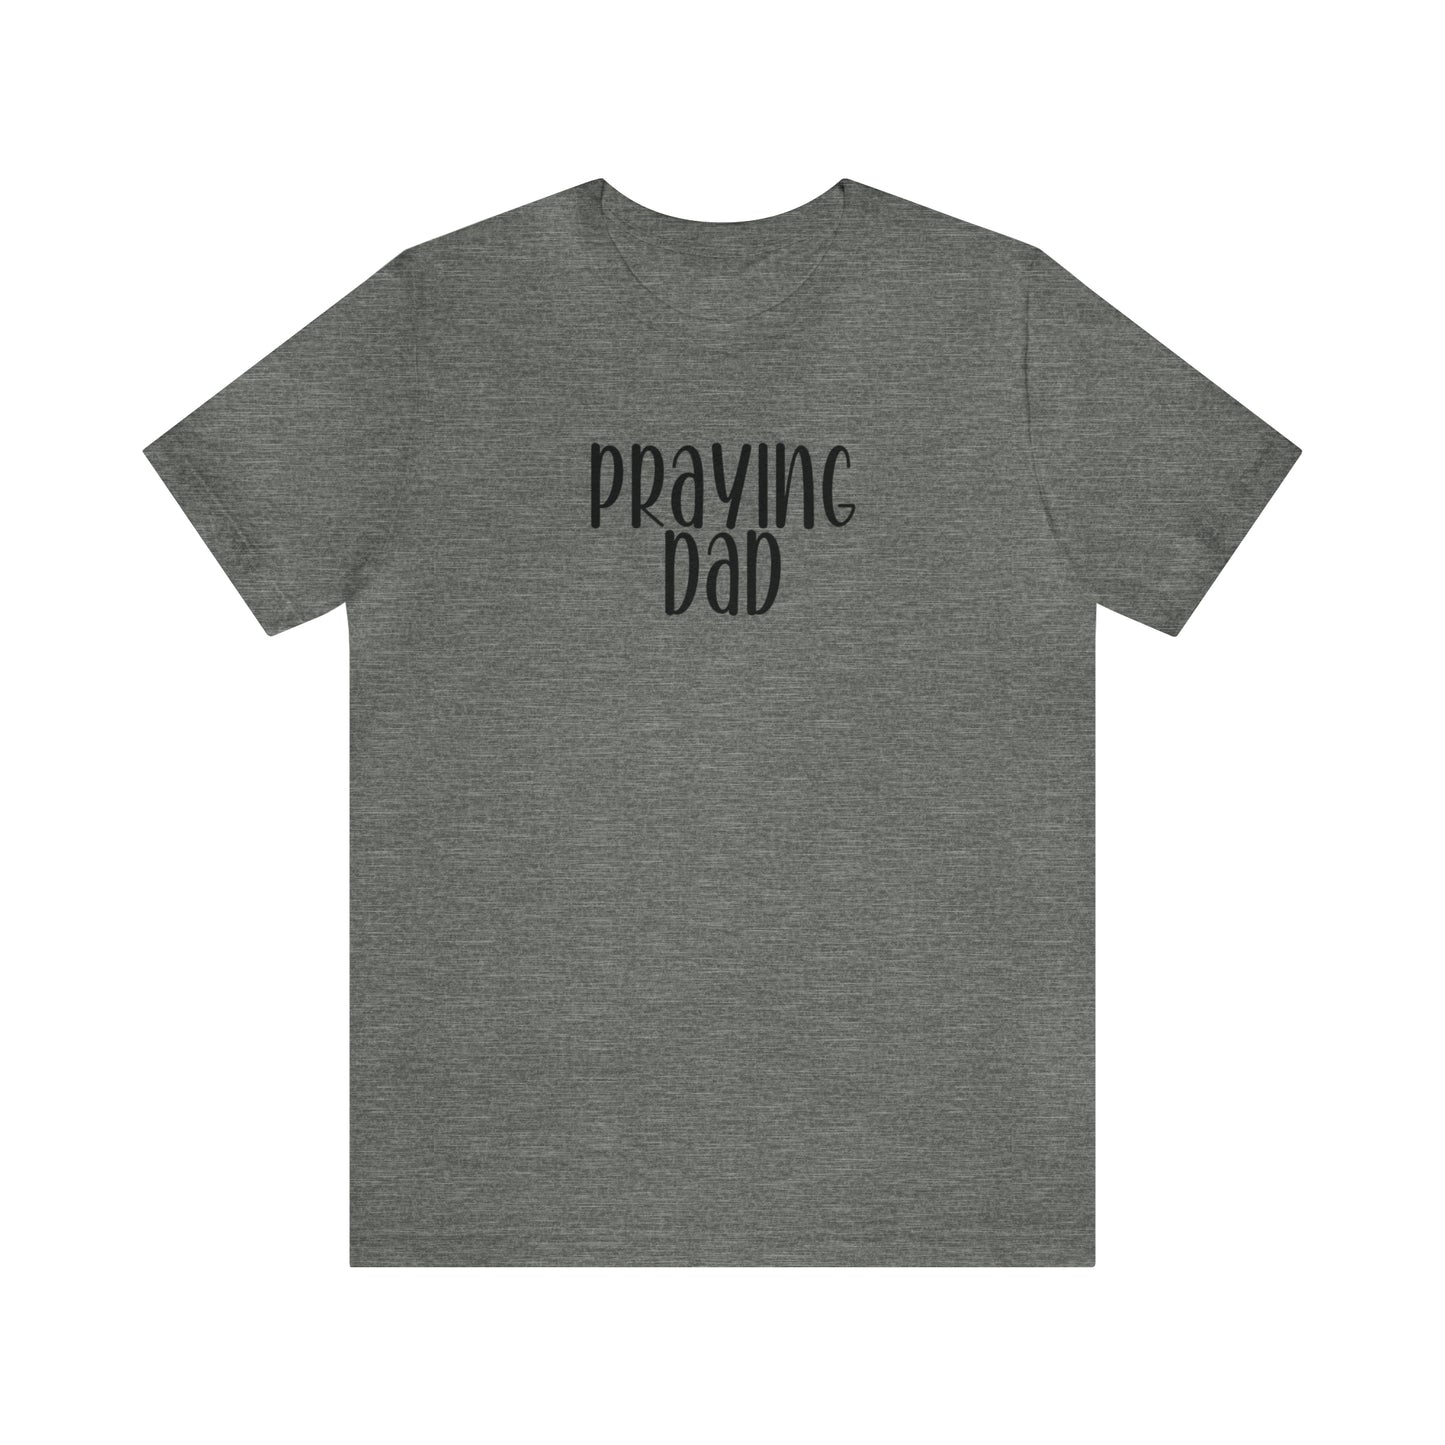 Praying Dad Shirt, Christian Tee